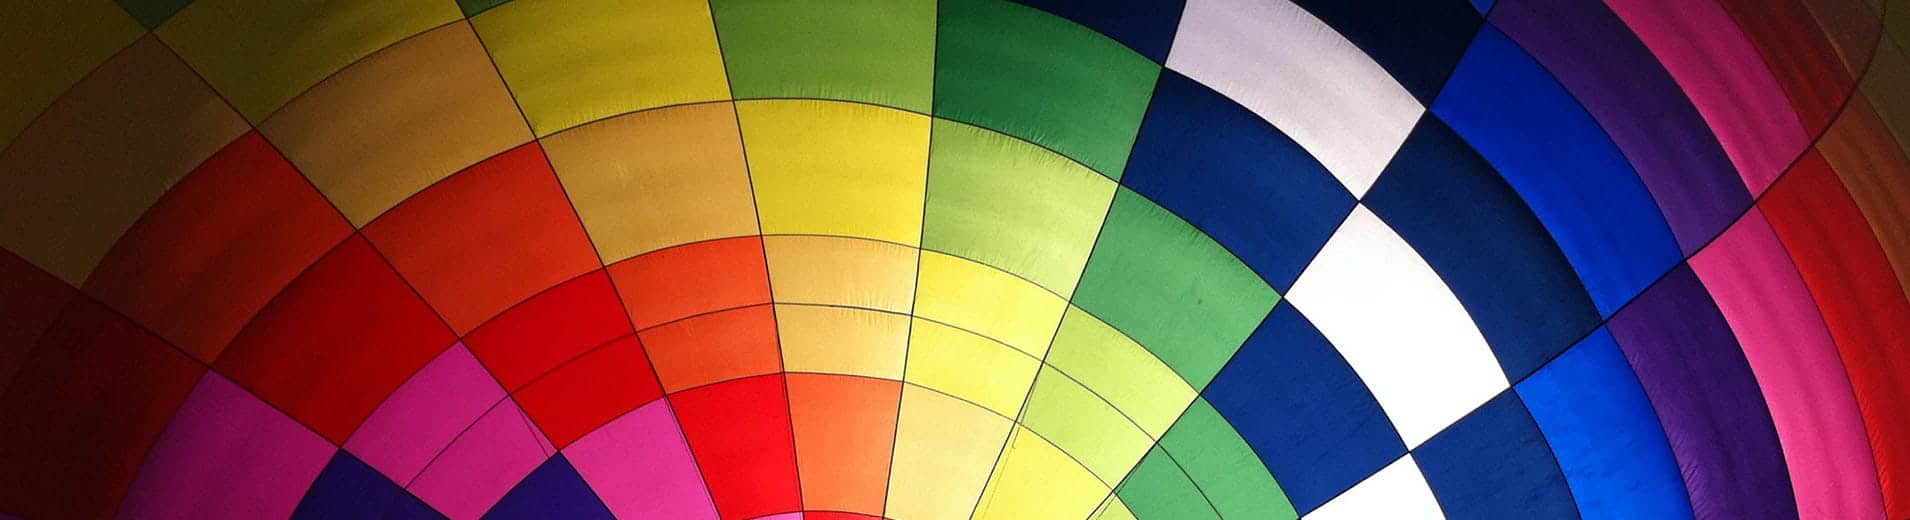 Multicoloured hot air balloon_N_0925